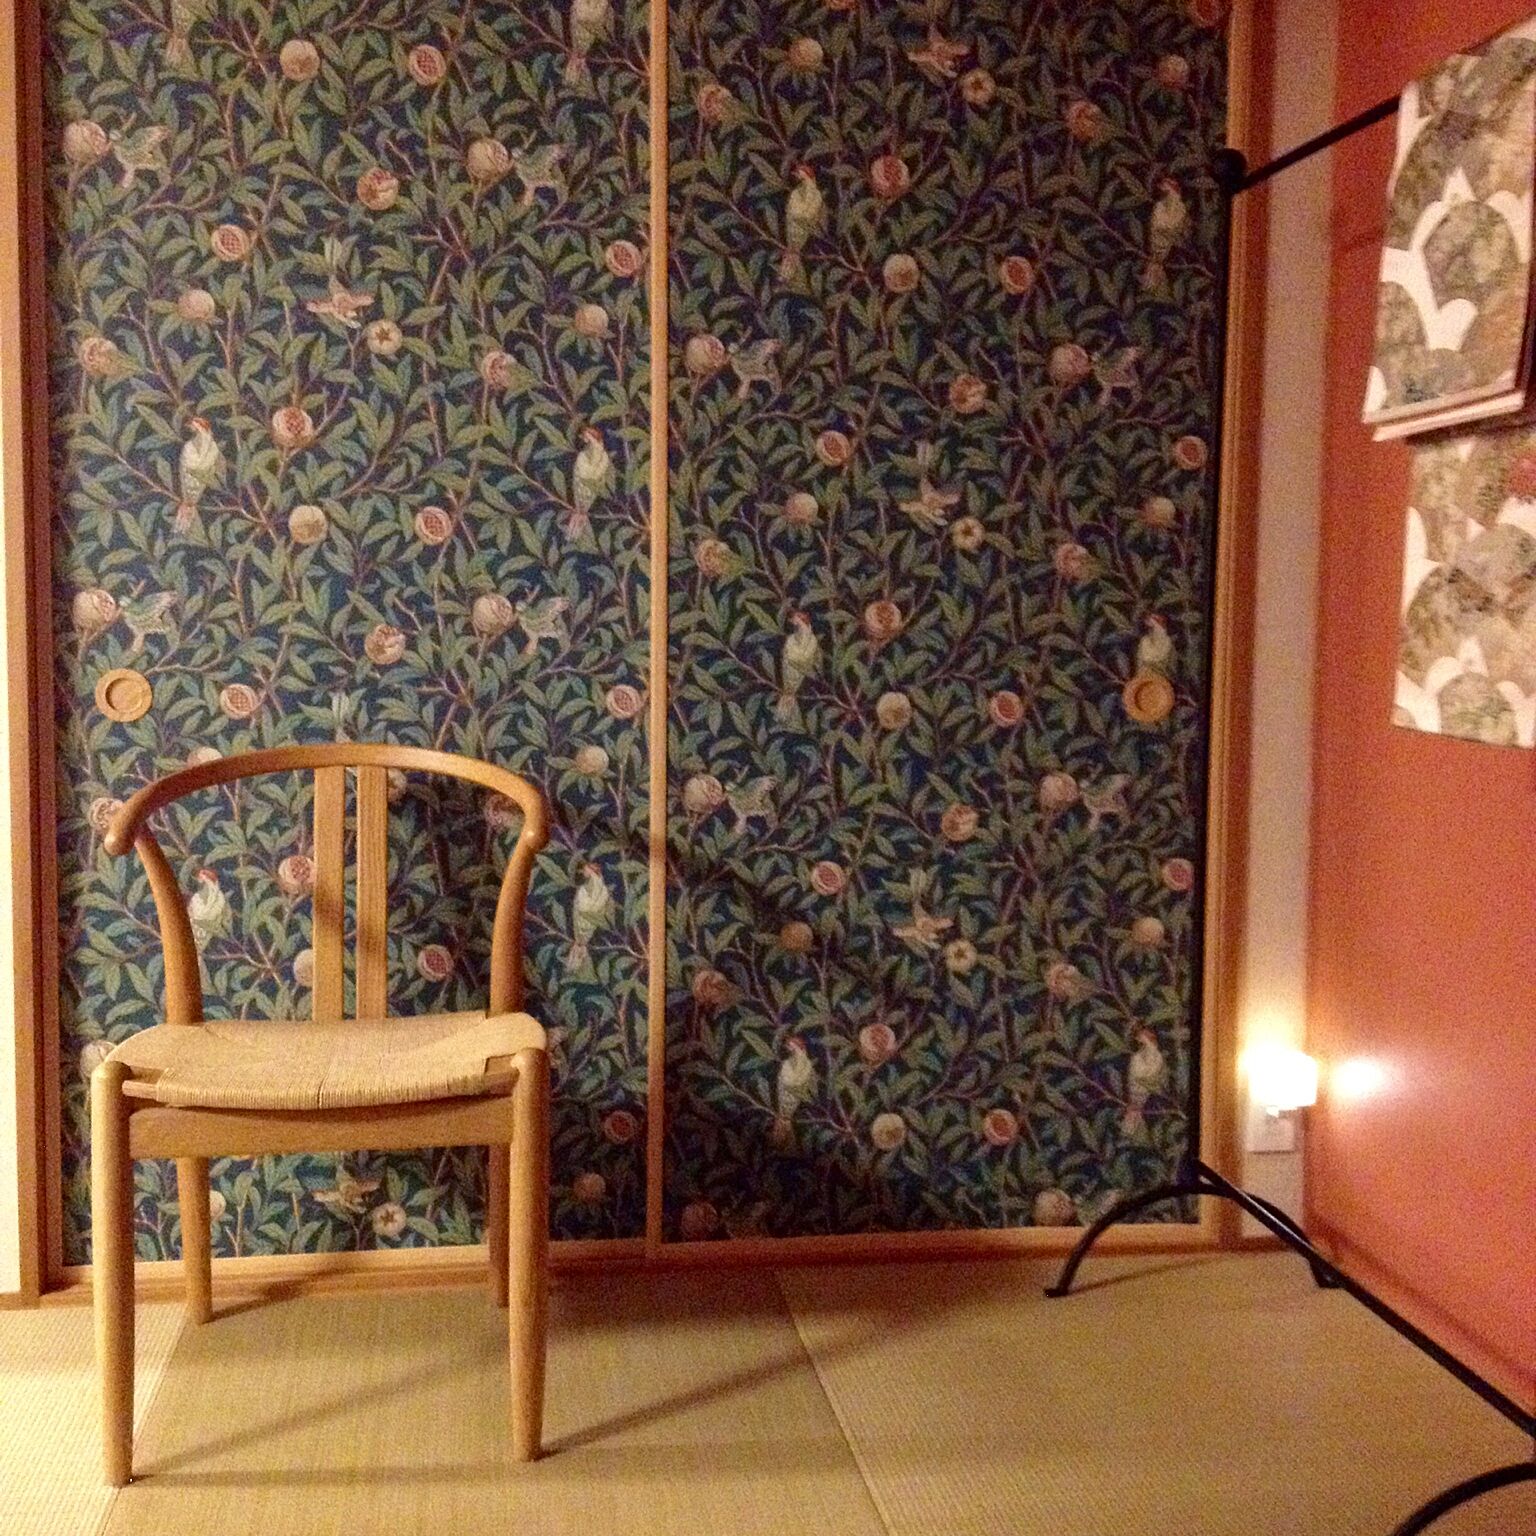 気品と優雅さをまとうお部屋に。空間を魅せるウィリアム・モリスのデザイン